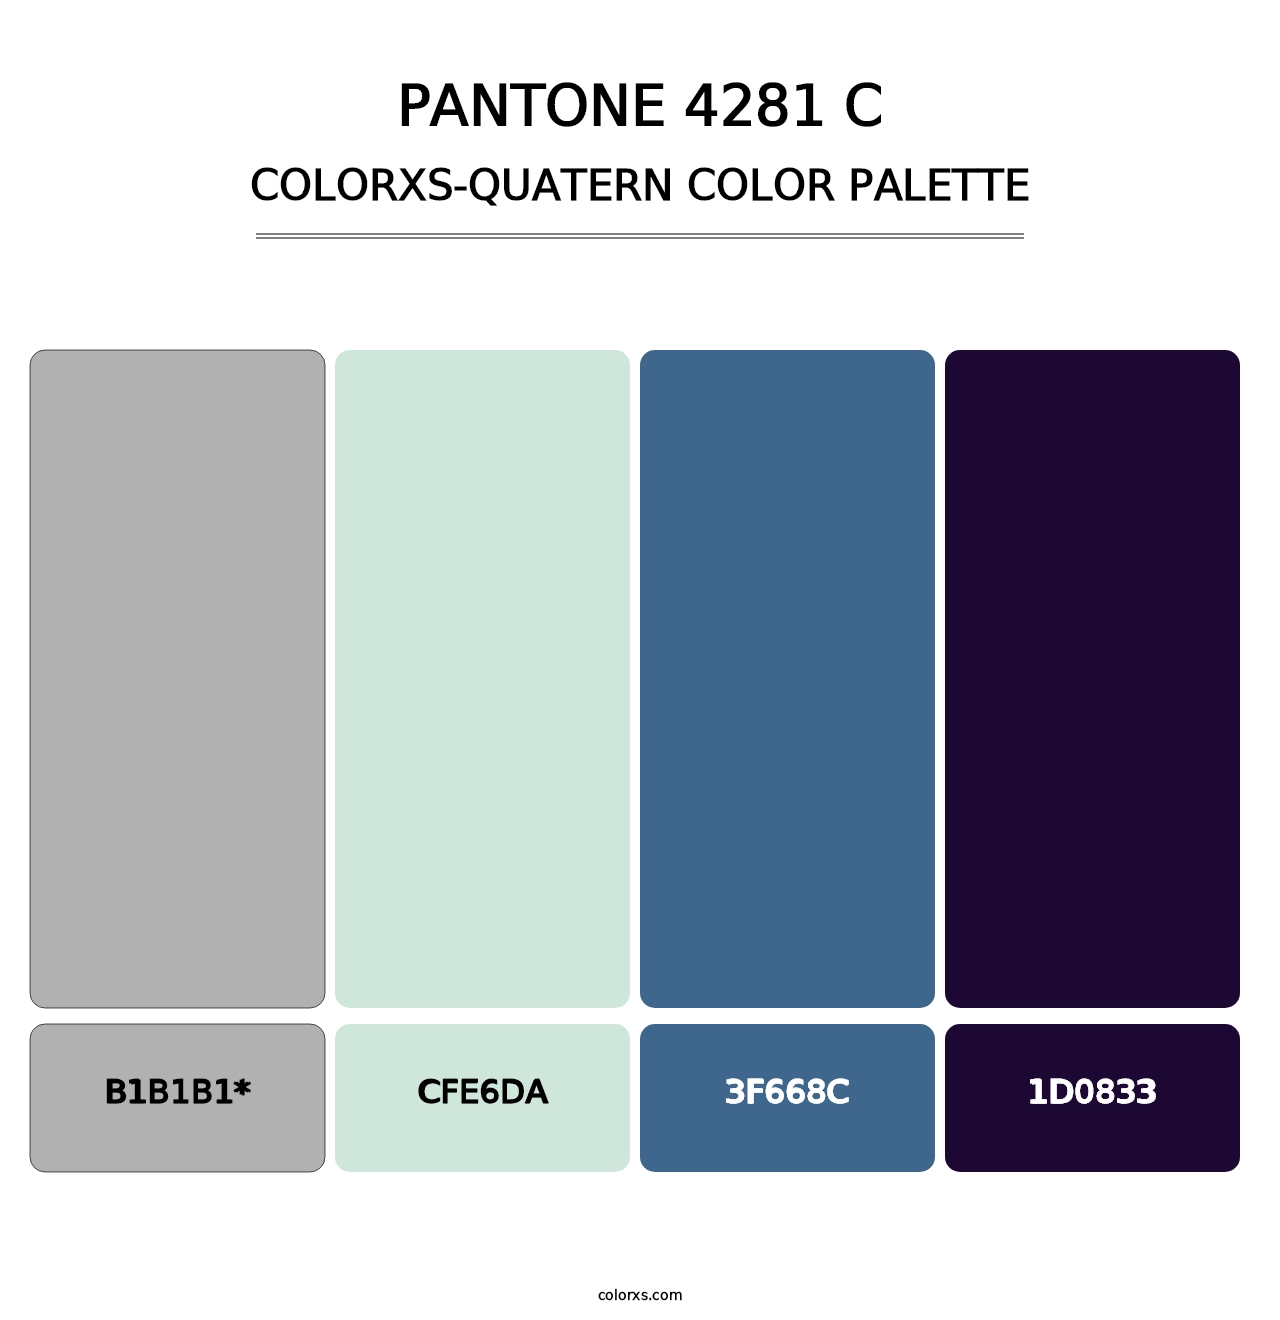 PANTONE 4281 C - Colorxs Quatern Palette